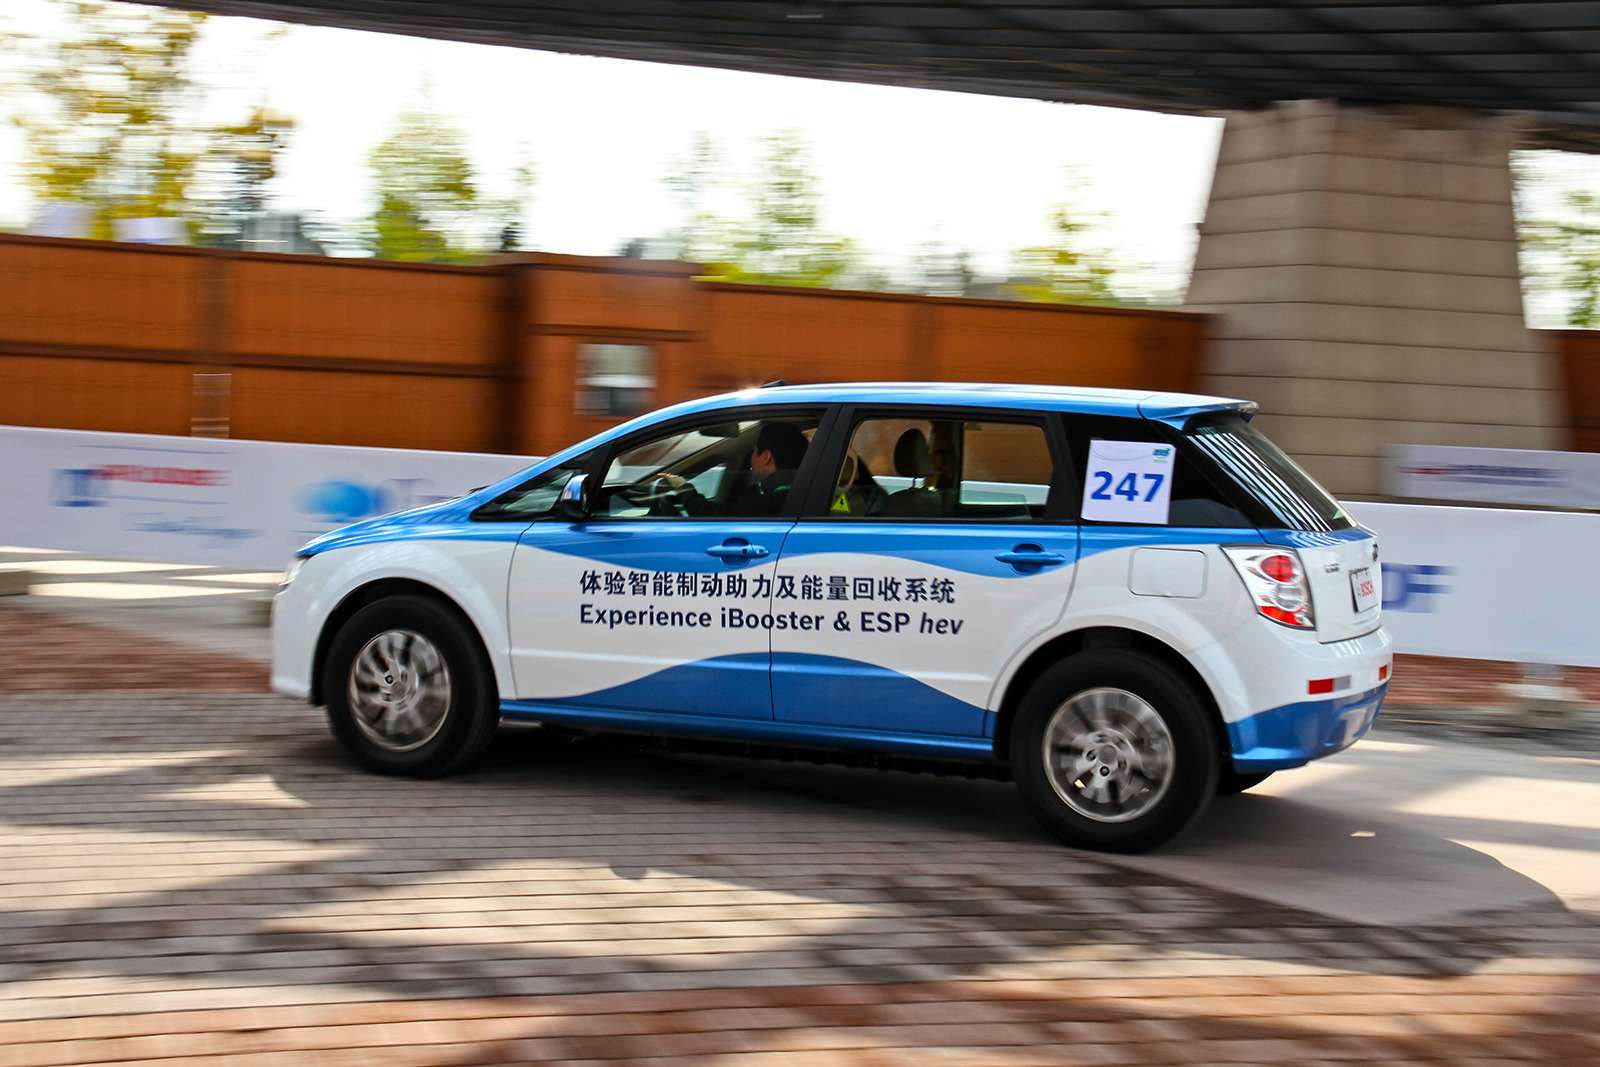 Один из пионеров среди серийных китайских электромобилей – BYD e6. Он приобрел популярность в службе такси, где отдельные машины пробежали свыше 200 000 км. Небольшие партии поставлены в Колумбию, Коста-Рику, Голландию и Великобританию.